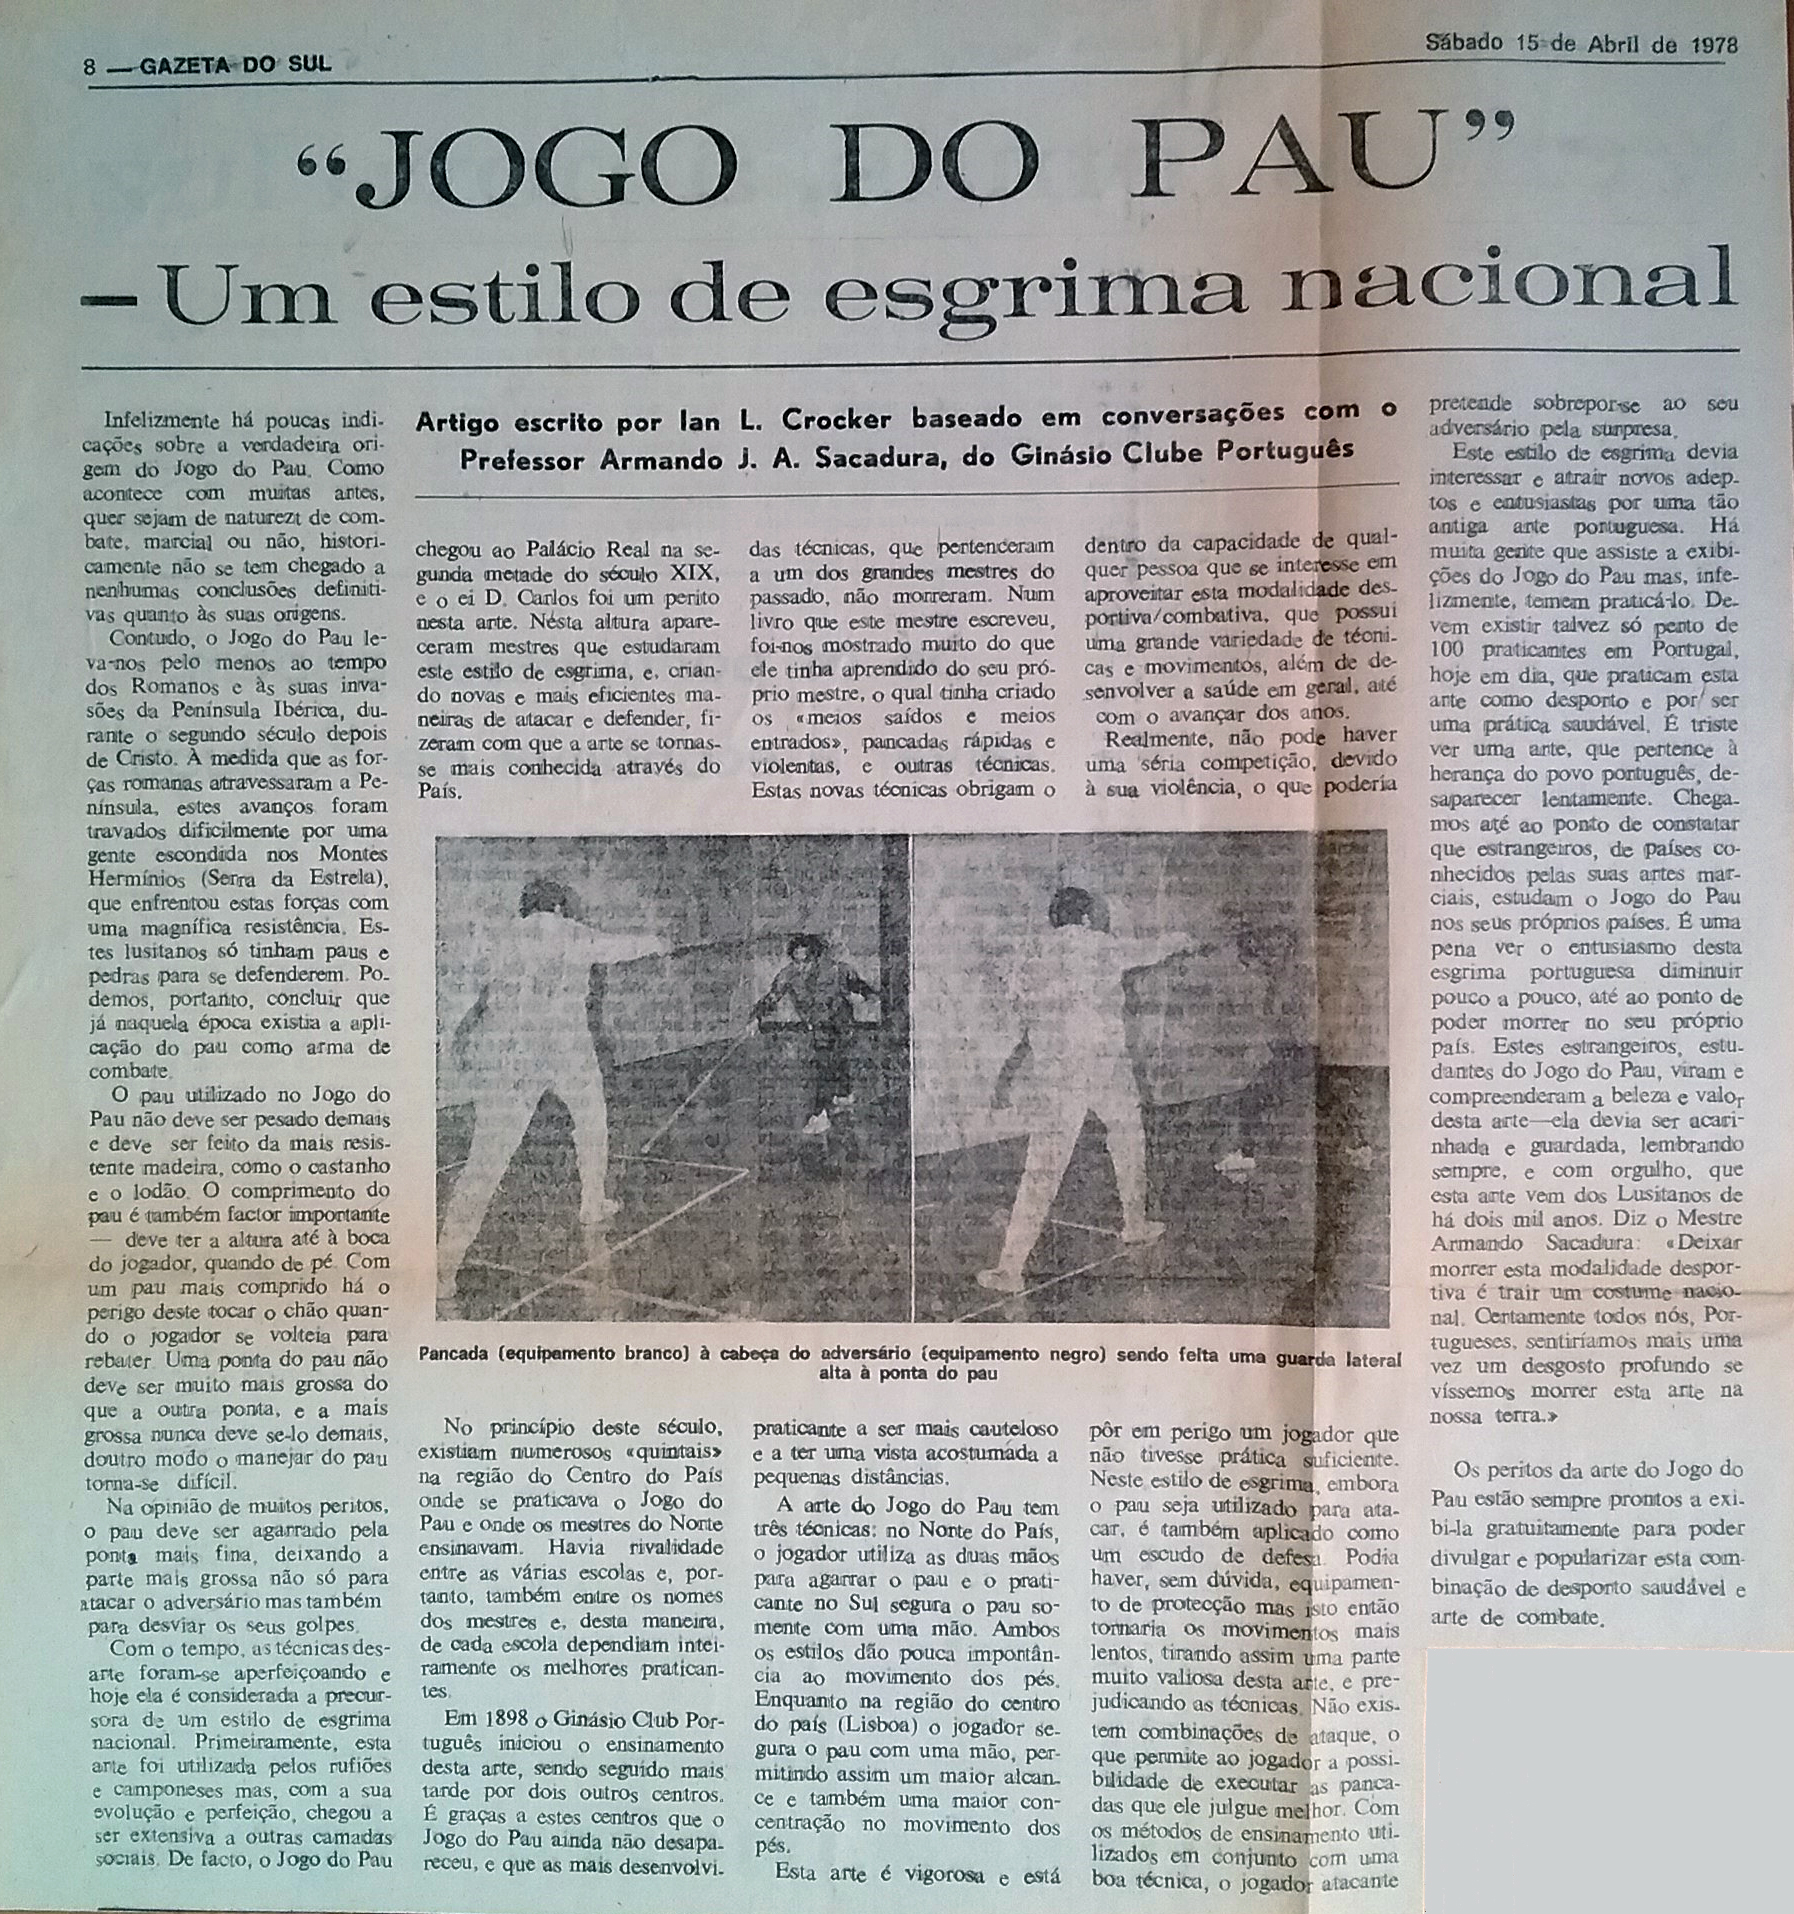 Recorte Gazeta do sul 1978.jpg